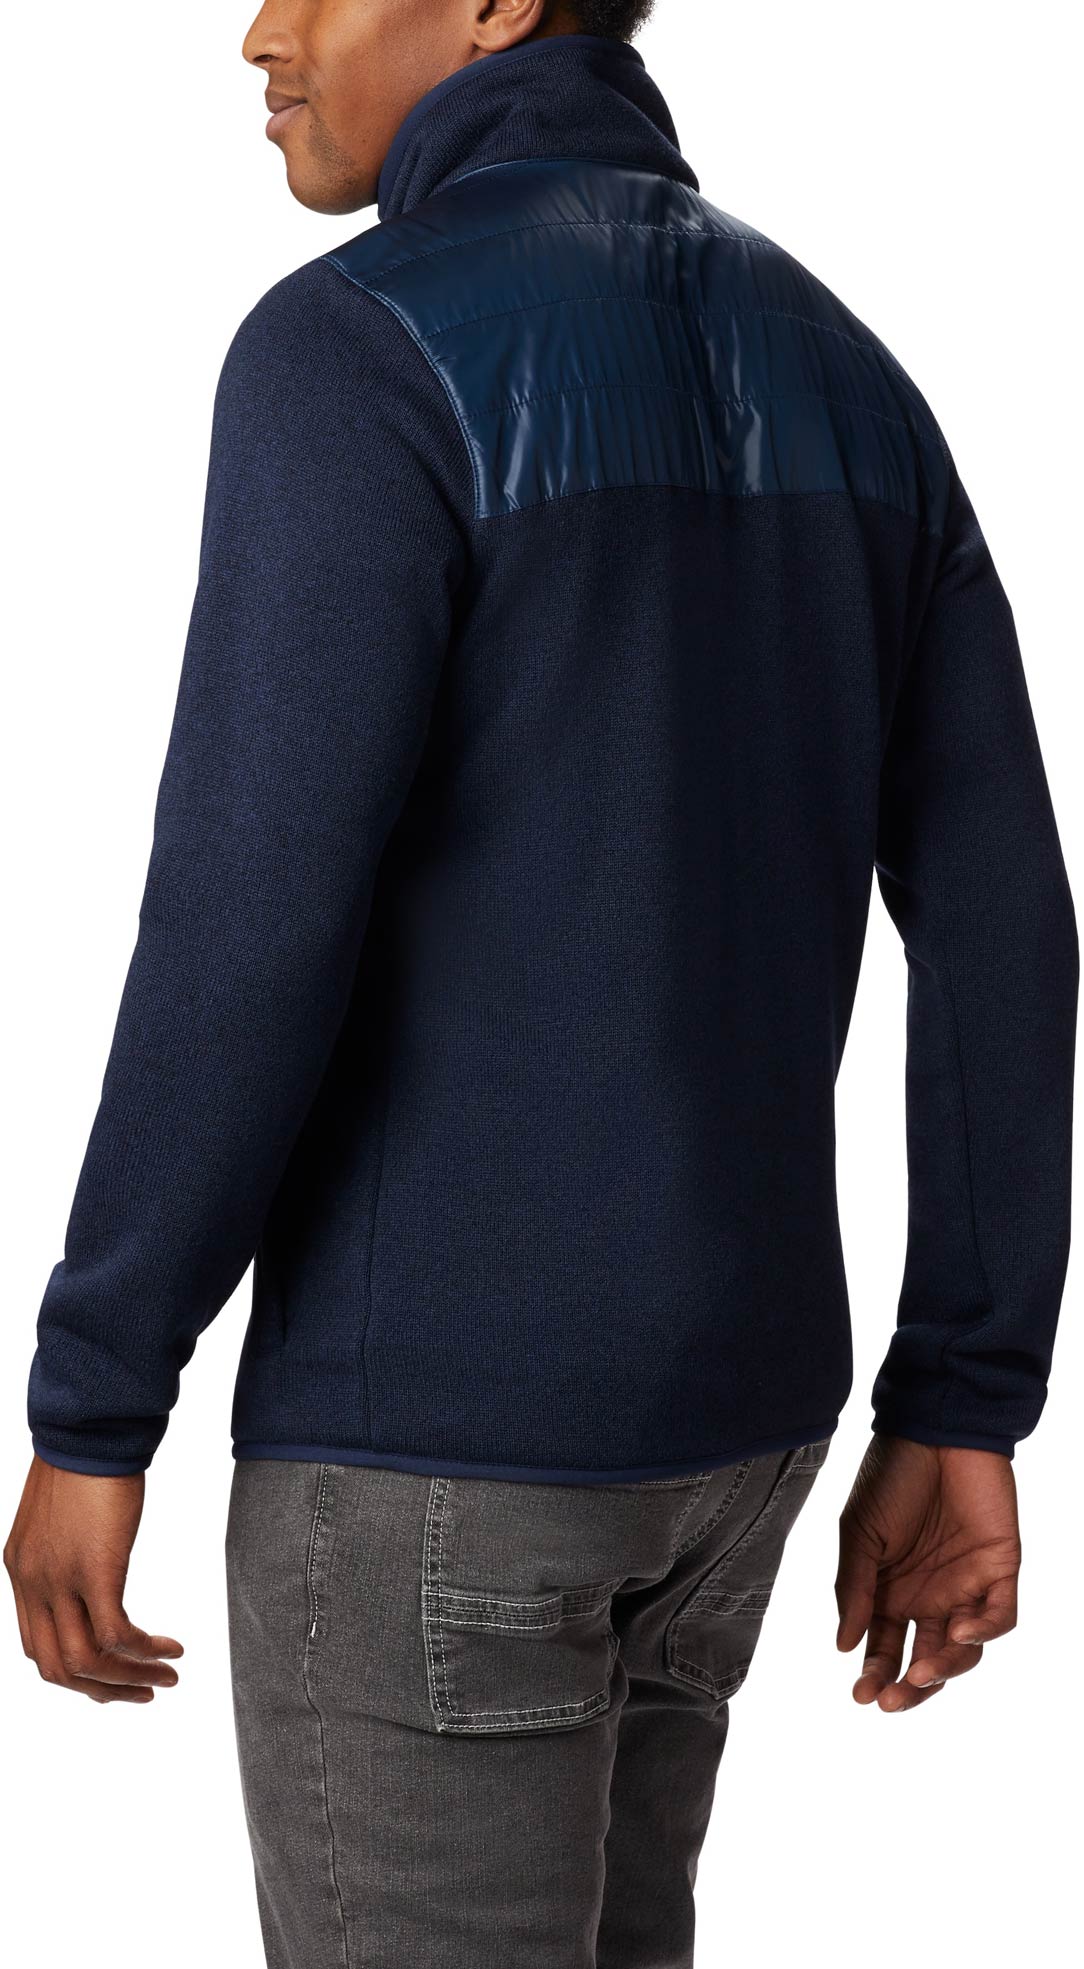 Men's fleece sweater